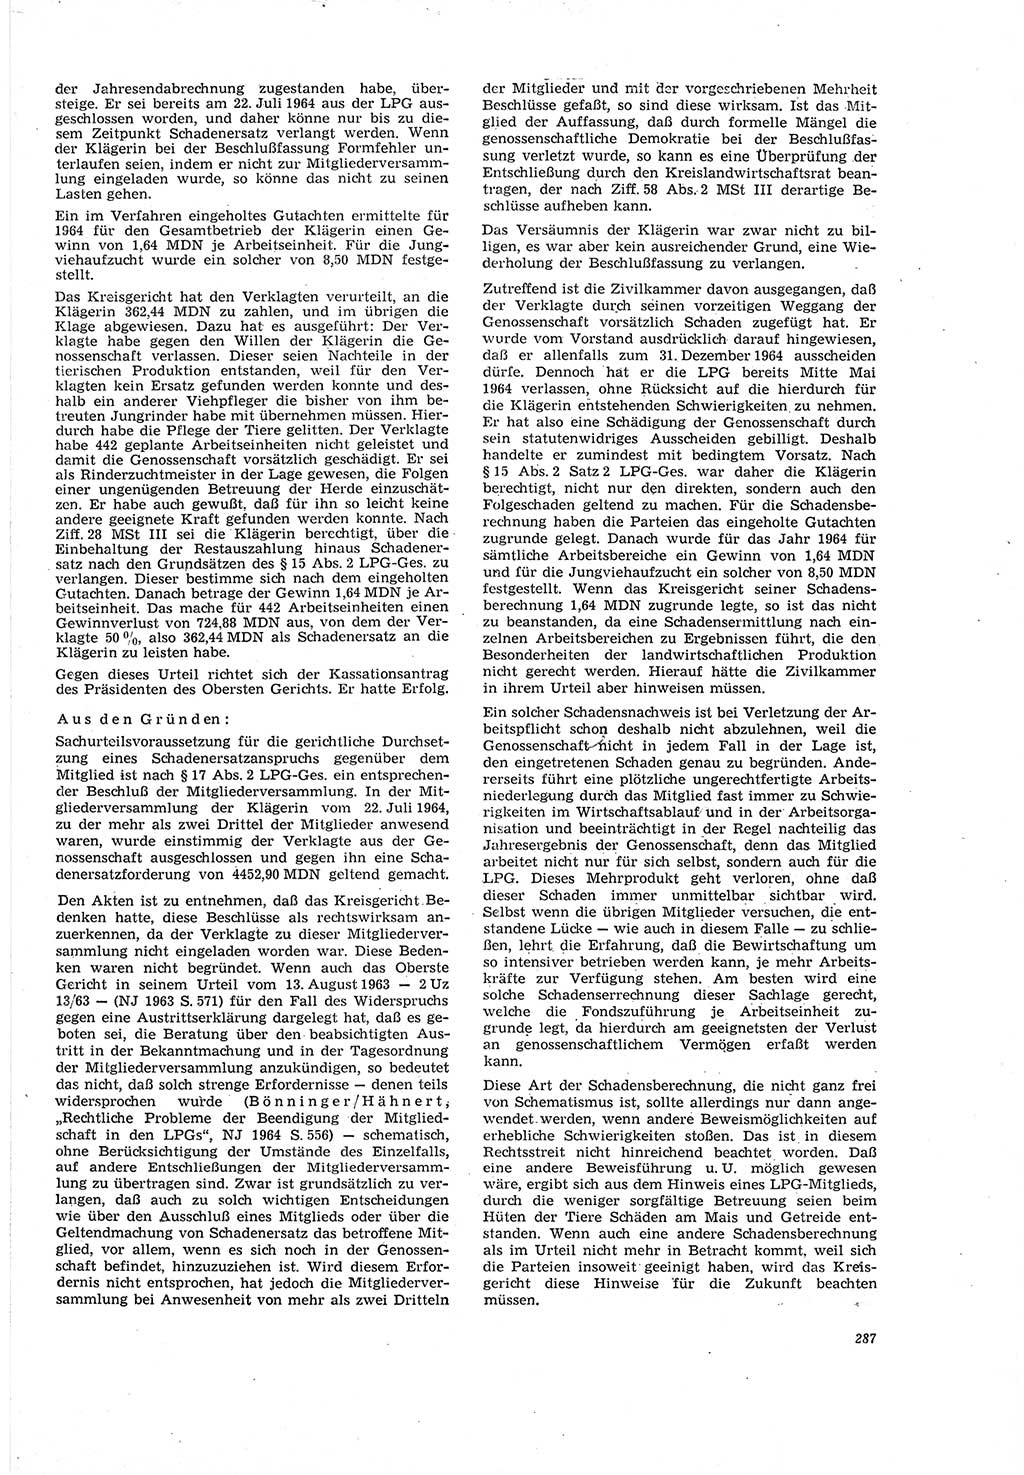 Neue Justiz (NJ), Zeitschrift für Recht und Rechtswissenschaft [Deutsche Demokratische Republik (DDR)], 20. Jahrgang 1966, Seite 287 (NJ DDR 1966, S. 287)